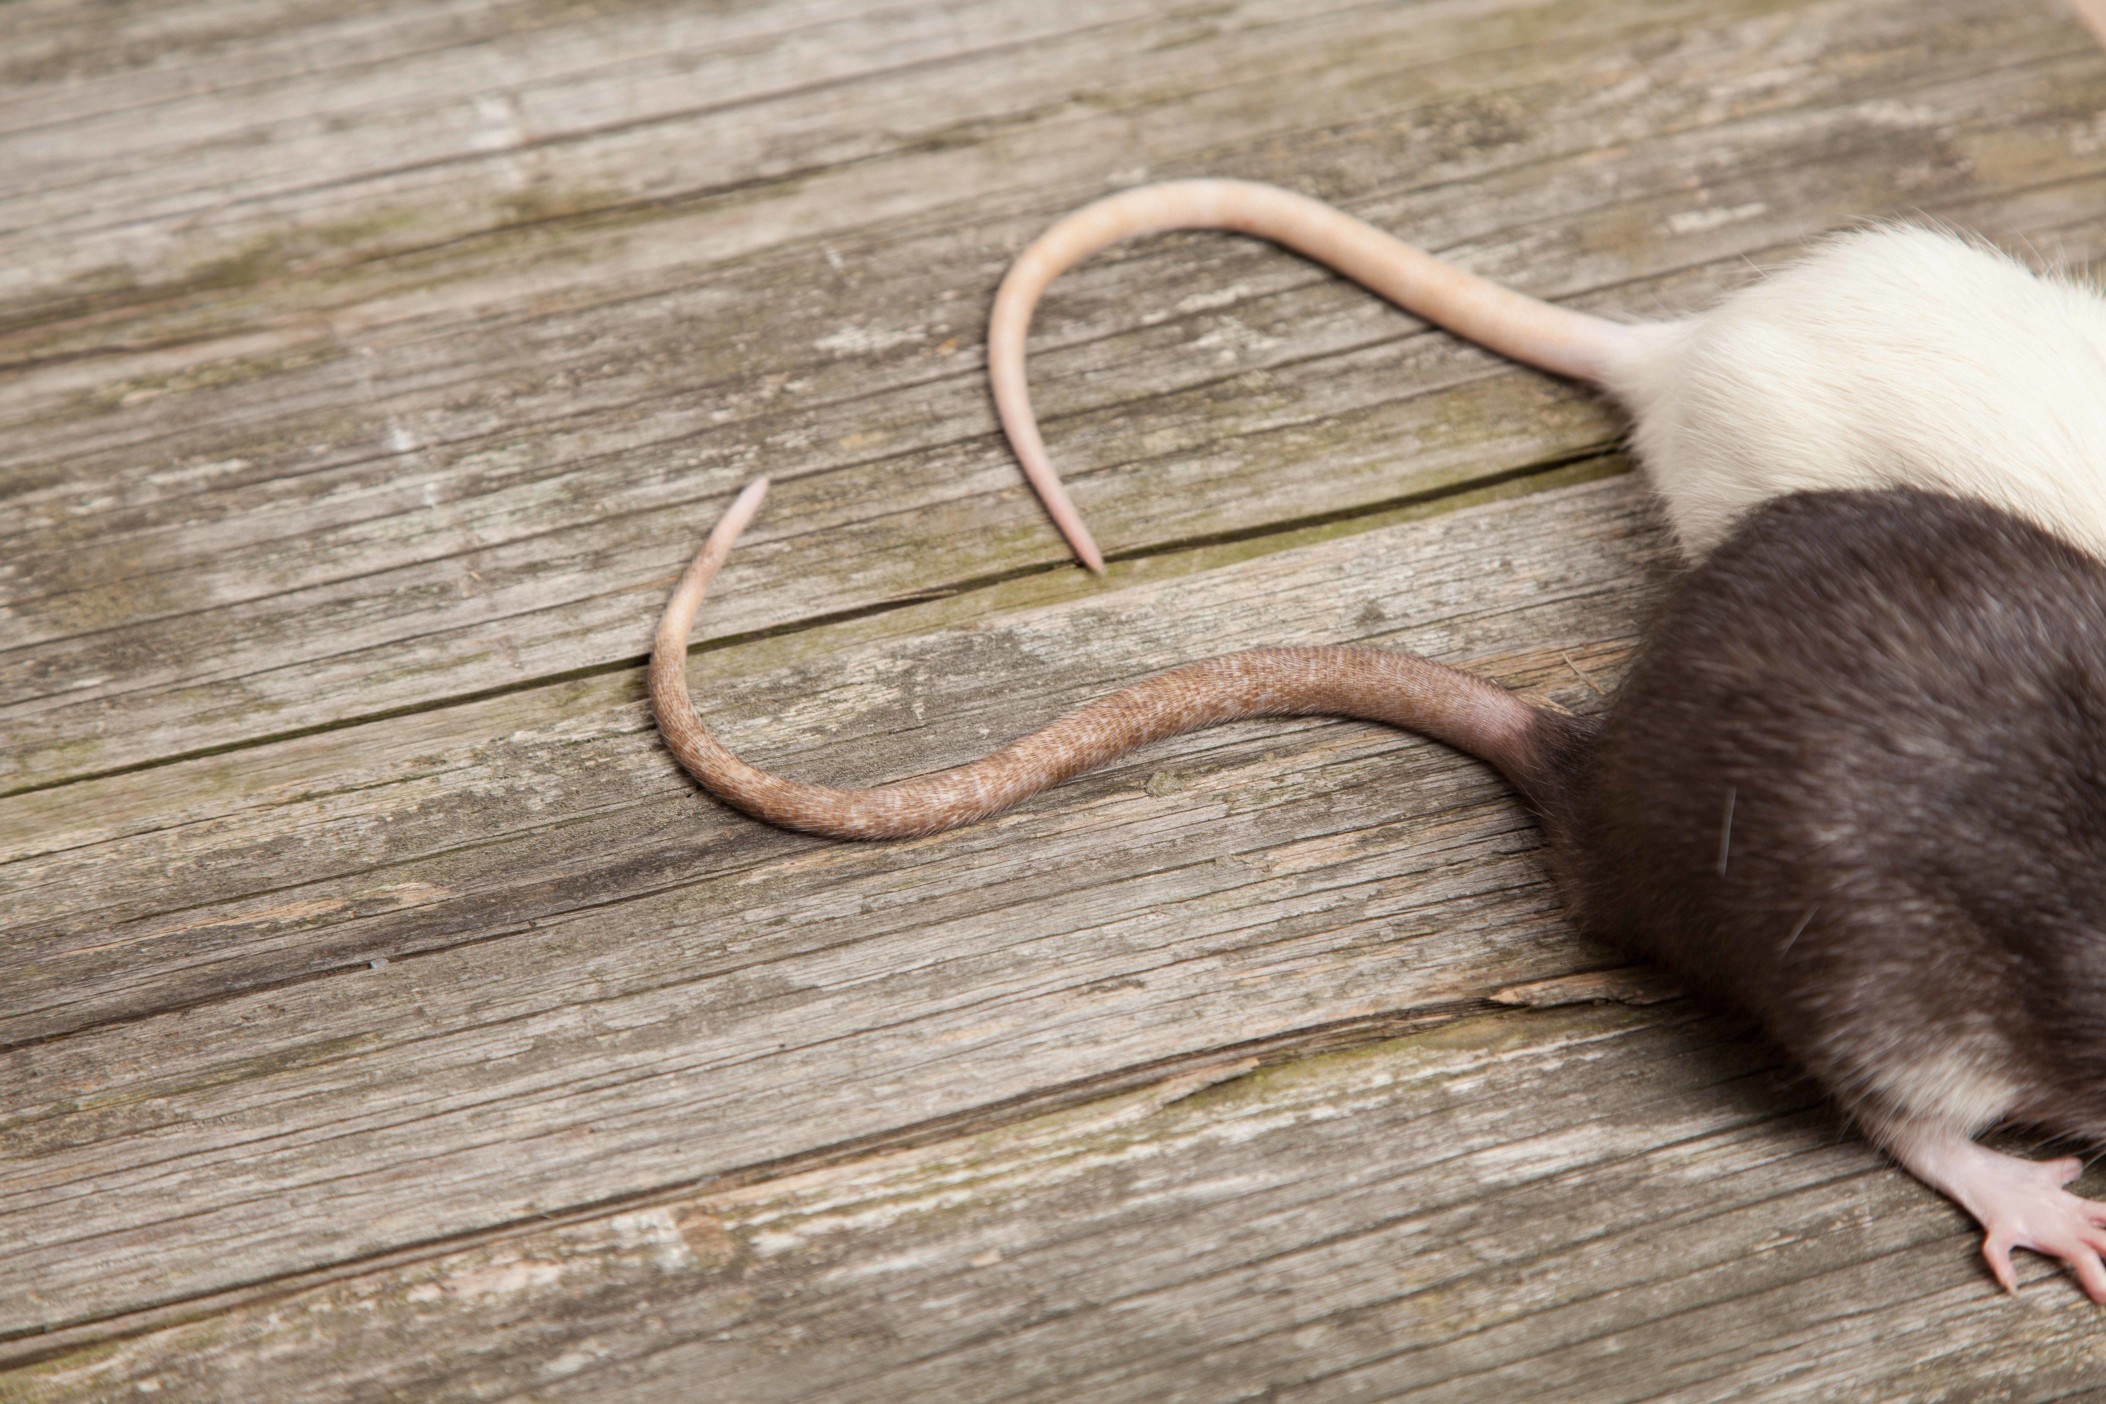 通過了解入侵的老鼠種類，可以利用其習性和弱點，有效的防治。在一般生活中經常出現的老鼠，嚴格說起來有三種，分別為溝鼠、屋頂鼠、月鼠。|潔肯除蟲公司